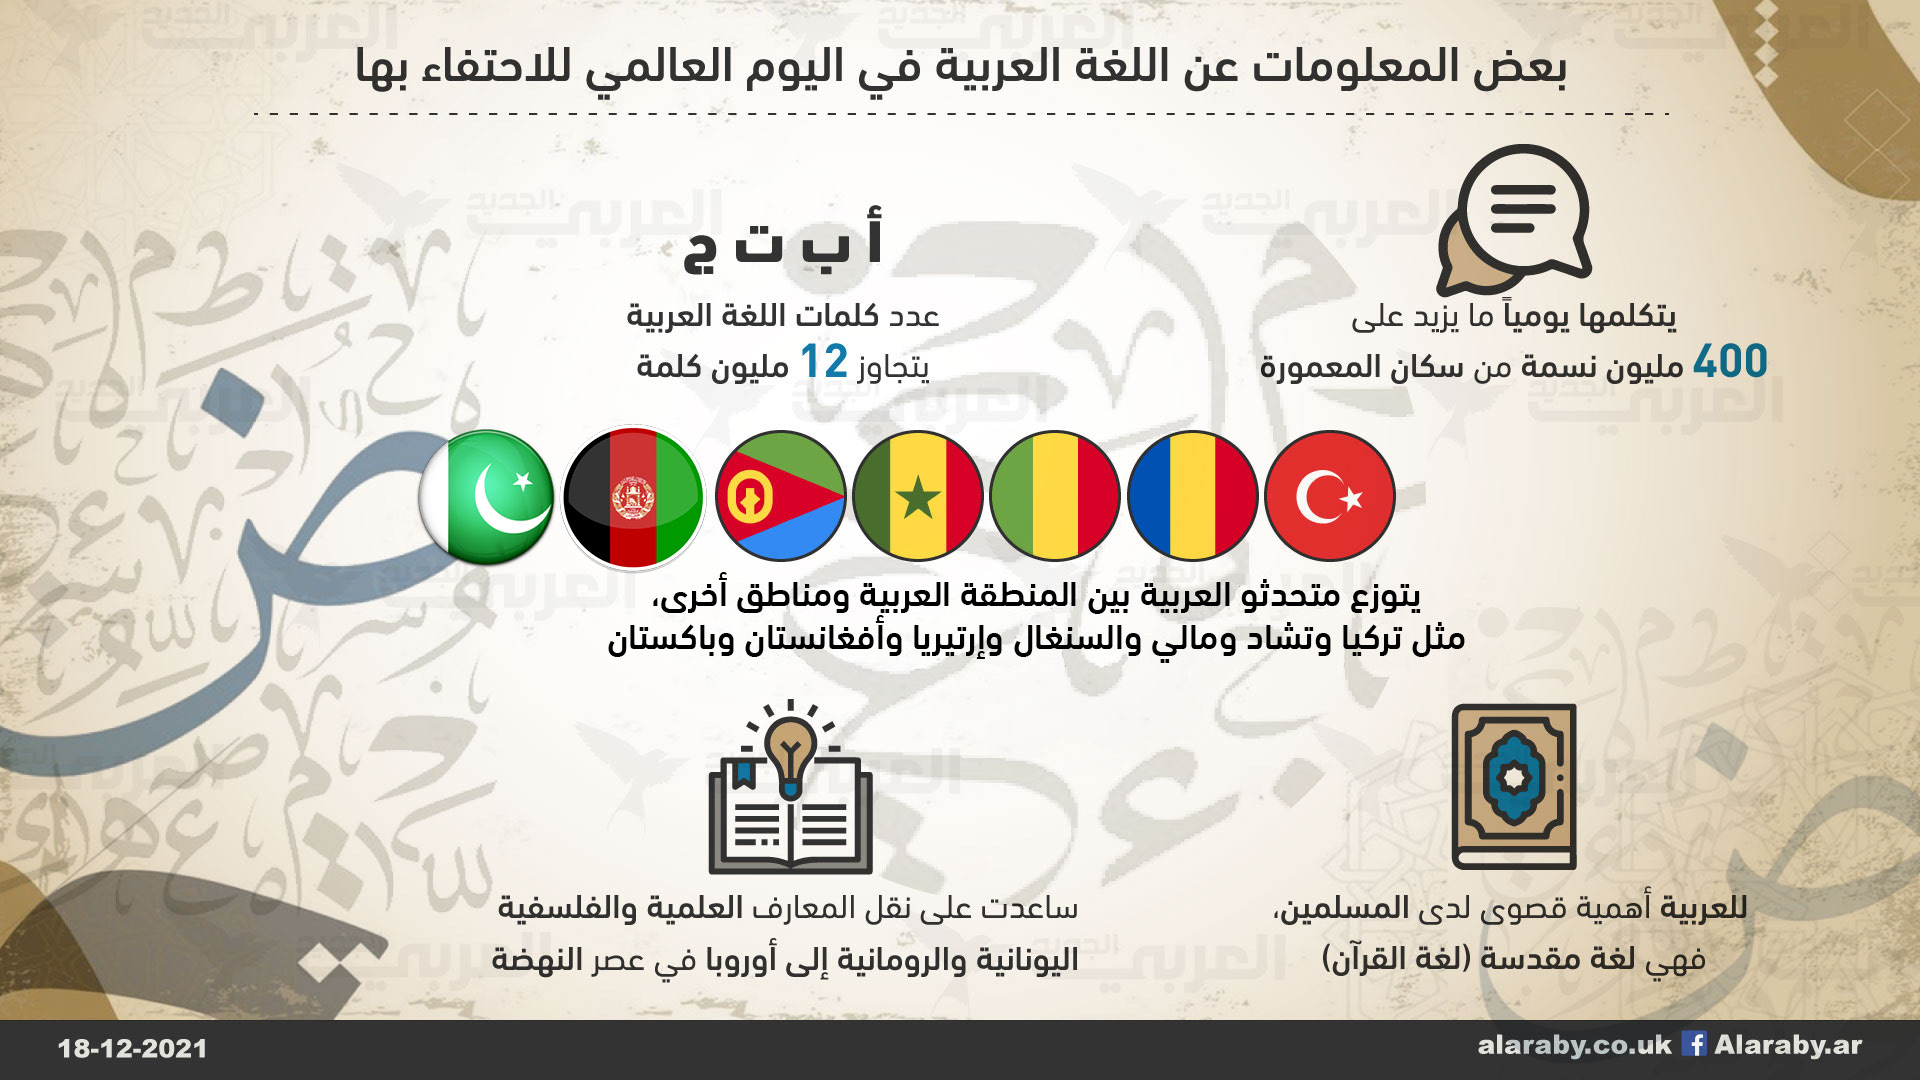 اليوم العالمي للغة العربية 2021